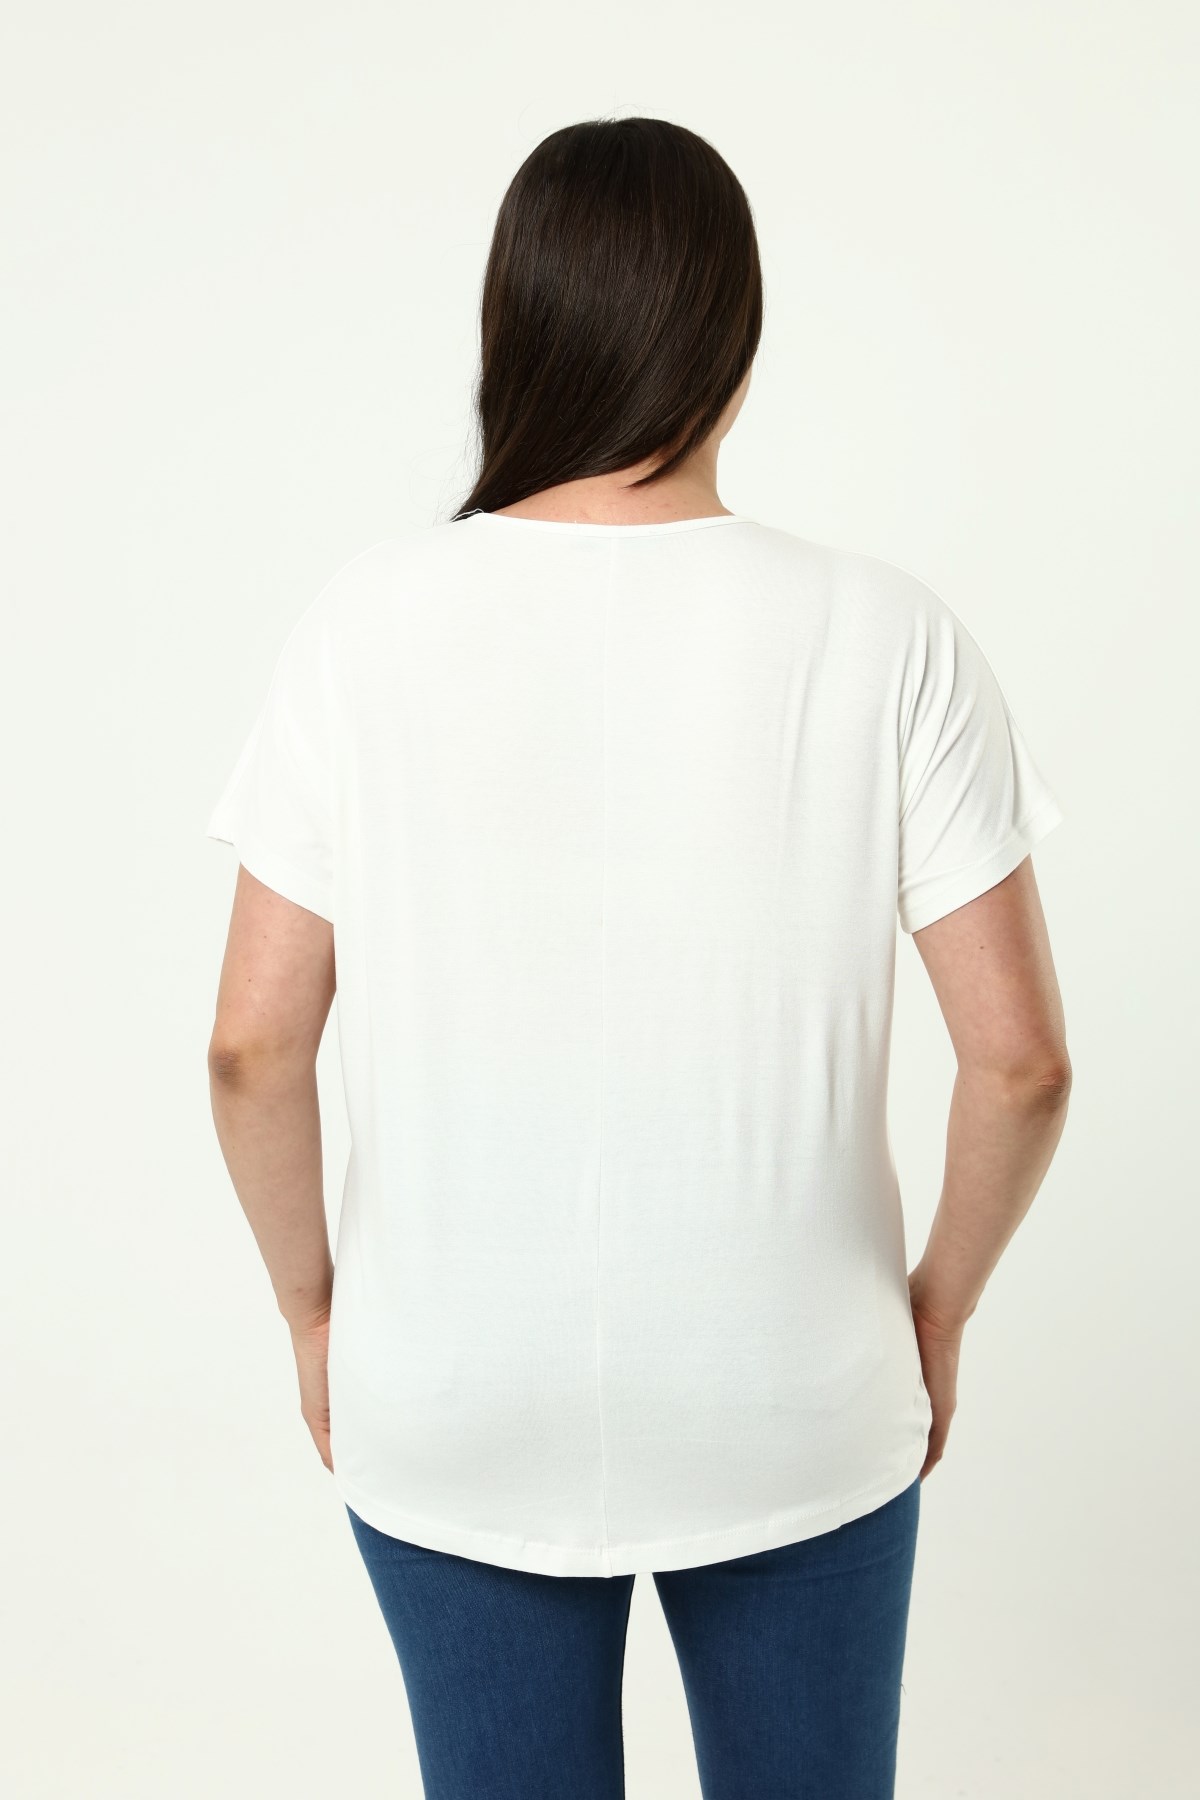 Büyük Beden Tayt Üstü Uzun Pamuklu Kısa Kollu Yaka Detaylı Tayt Üstüne  Model Şık Tshirt Beyaz